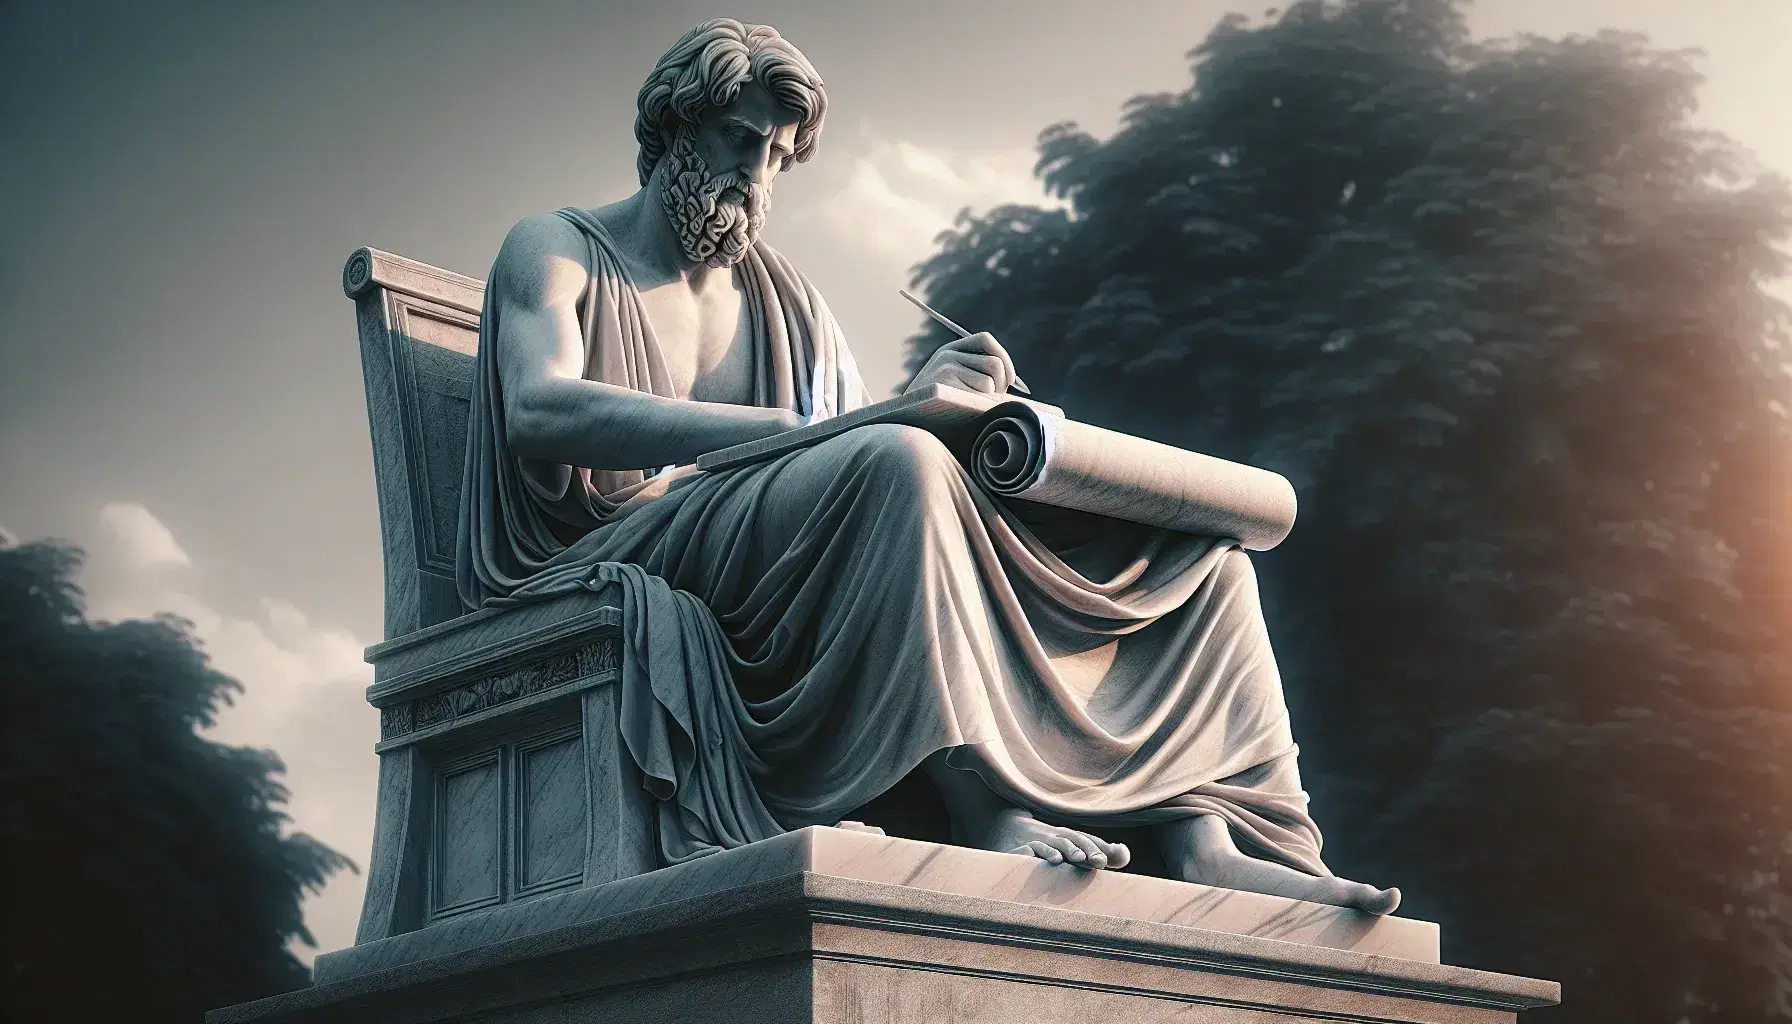 Statua in marmo di filosofo storico seduto che scrive su pergamena con stilus, su piedistallo grigio, in ambiente esterno sfocato.